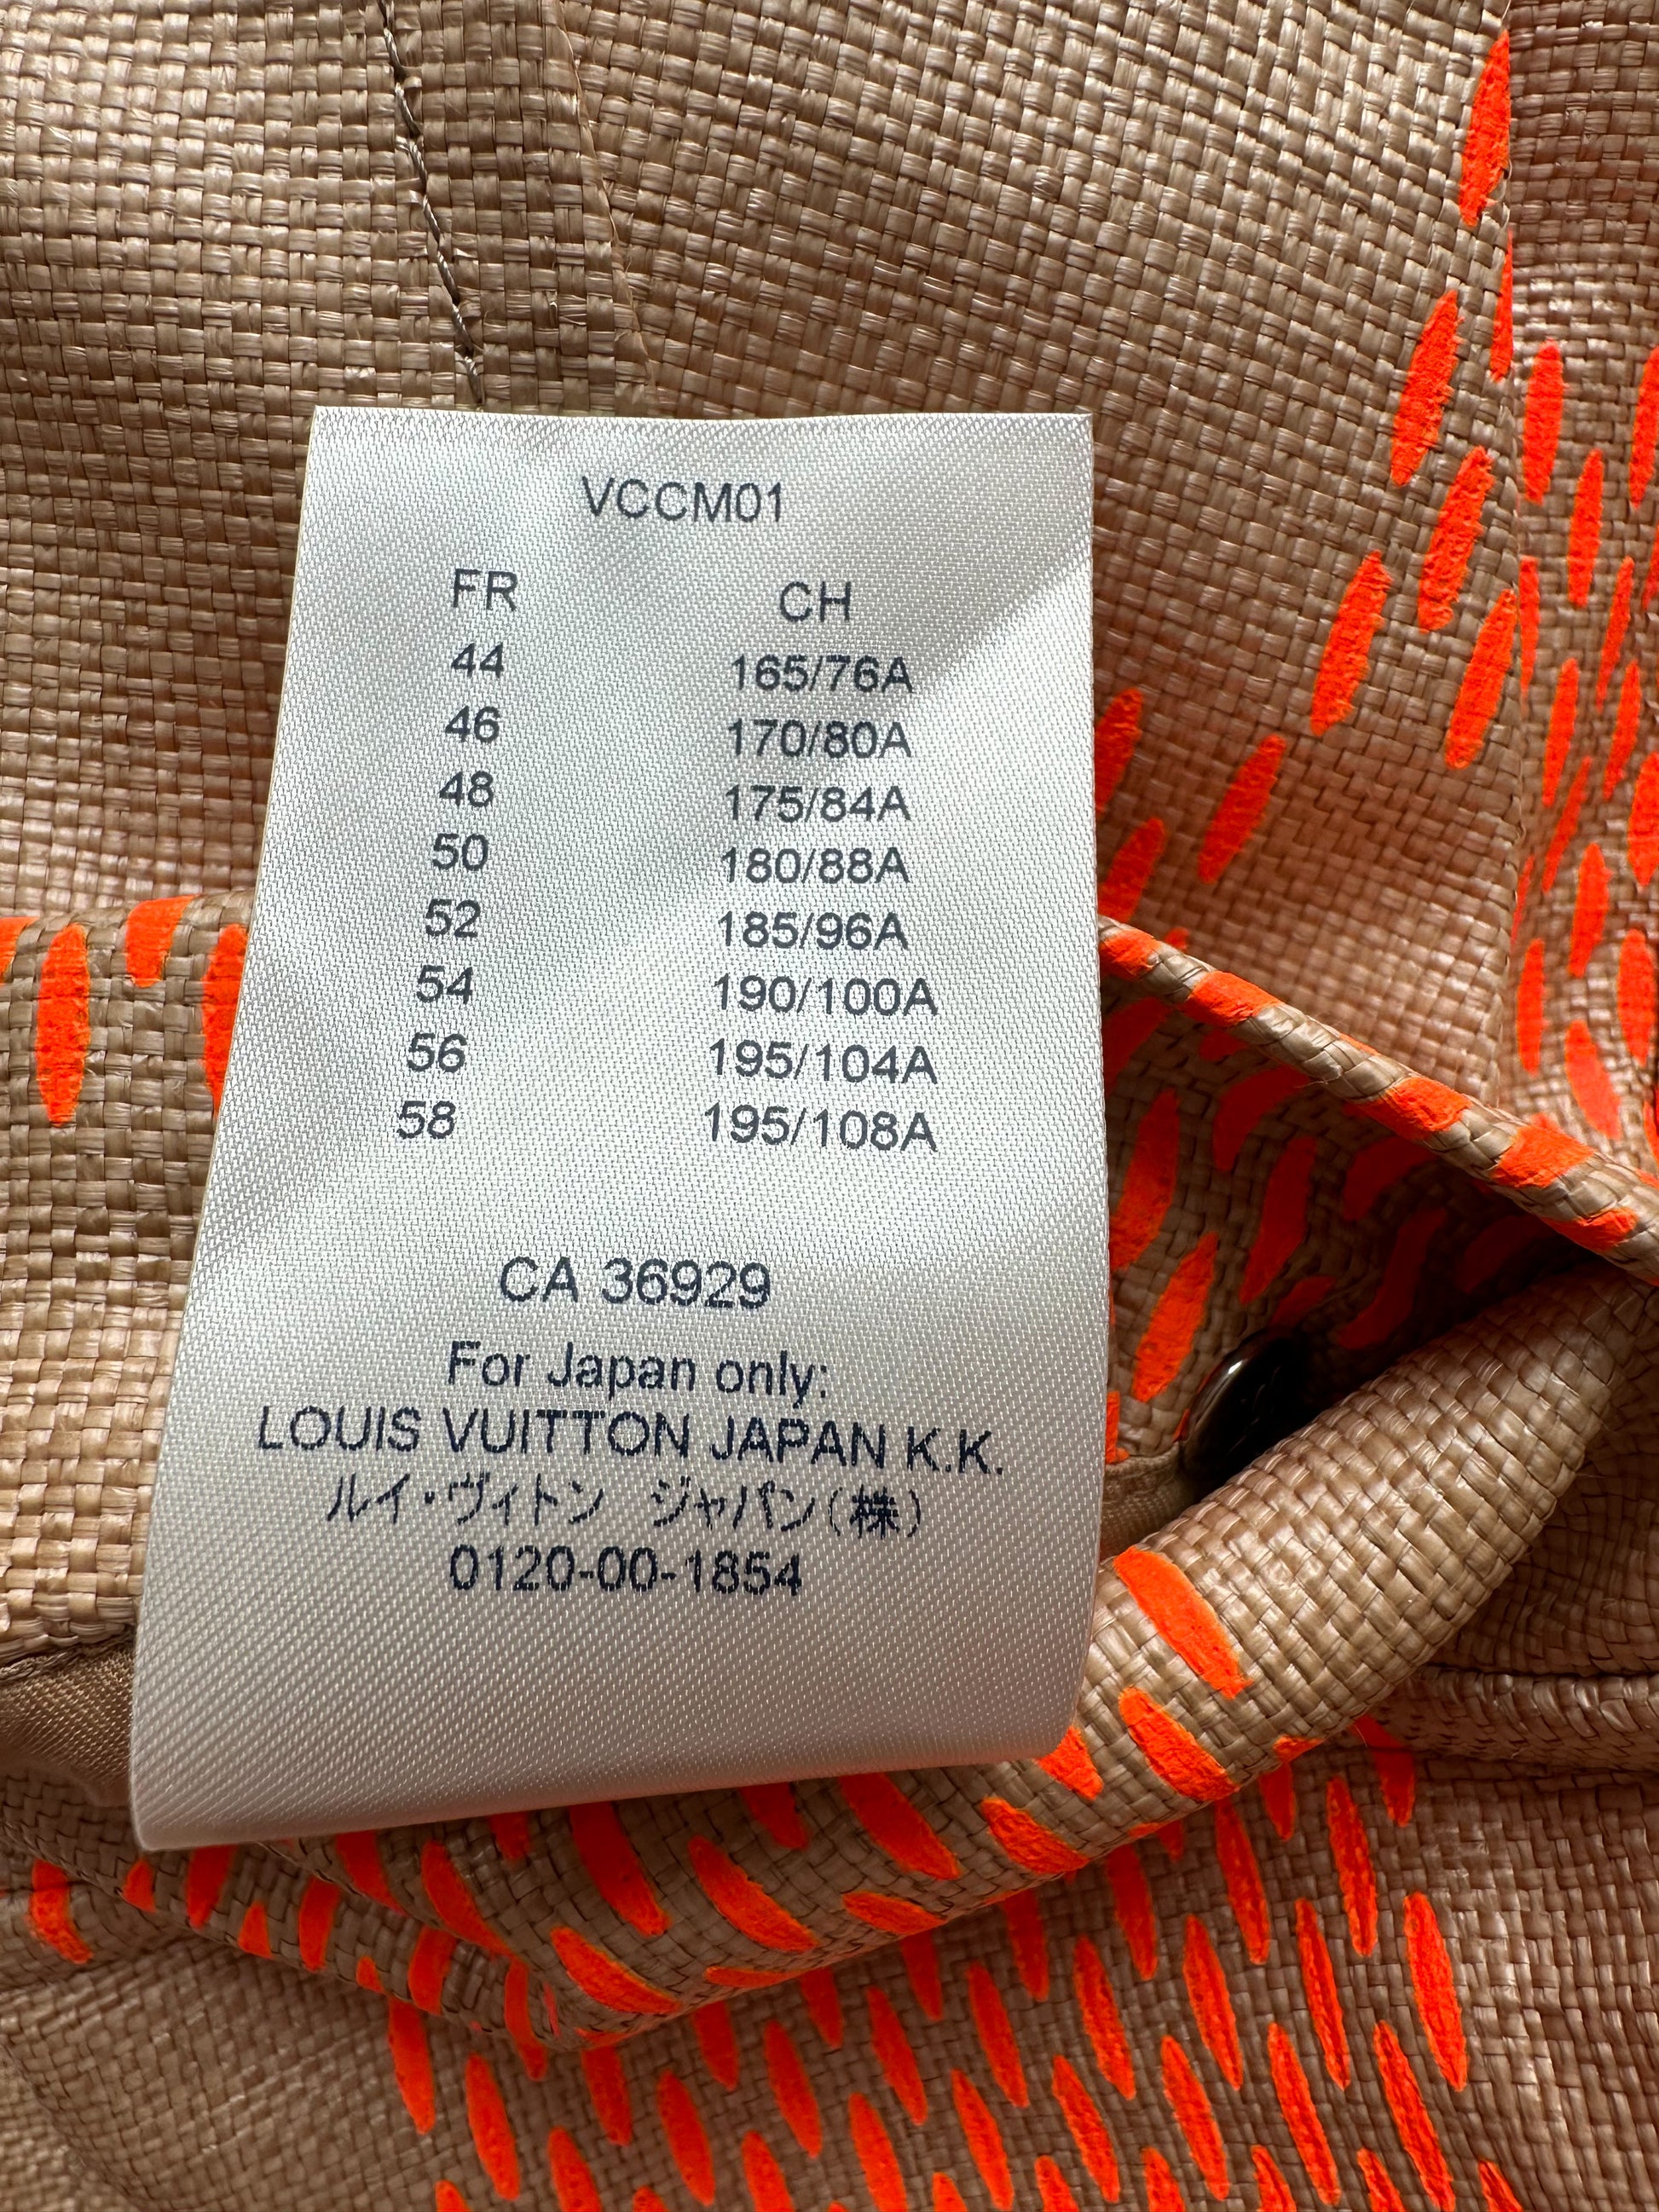 Louis Vuitton 2019 Vest - Orange Jackets, Clothing - LOU765999